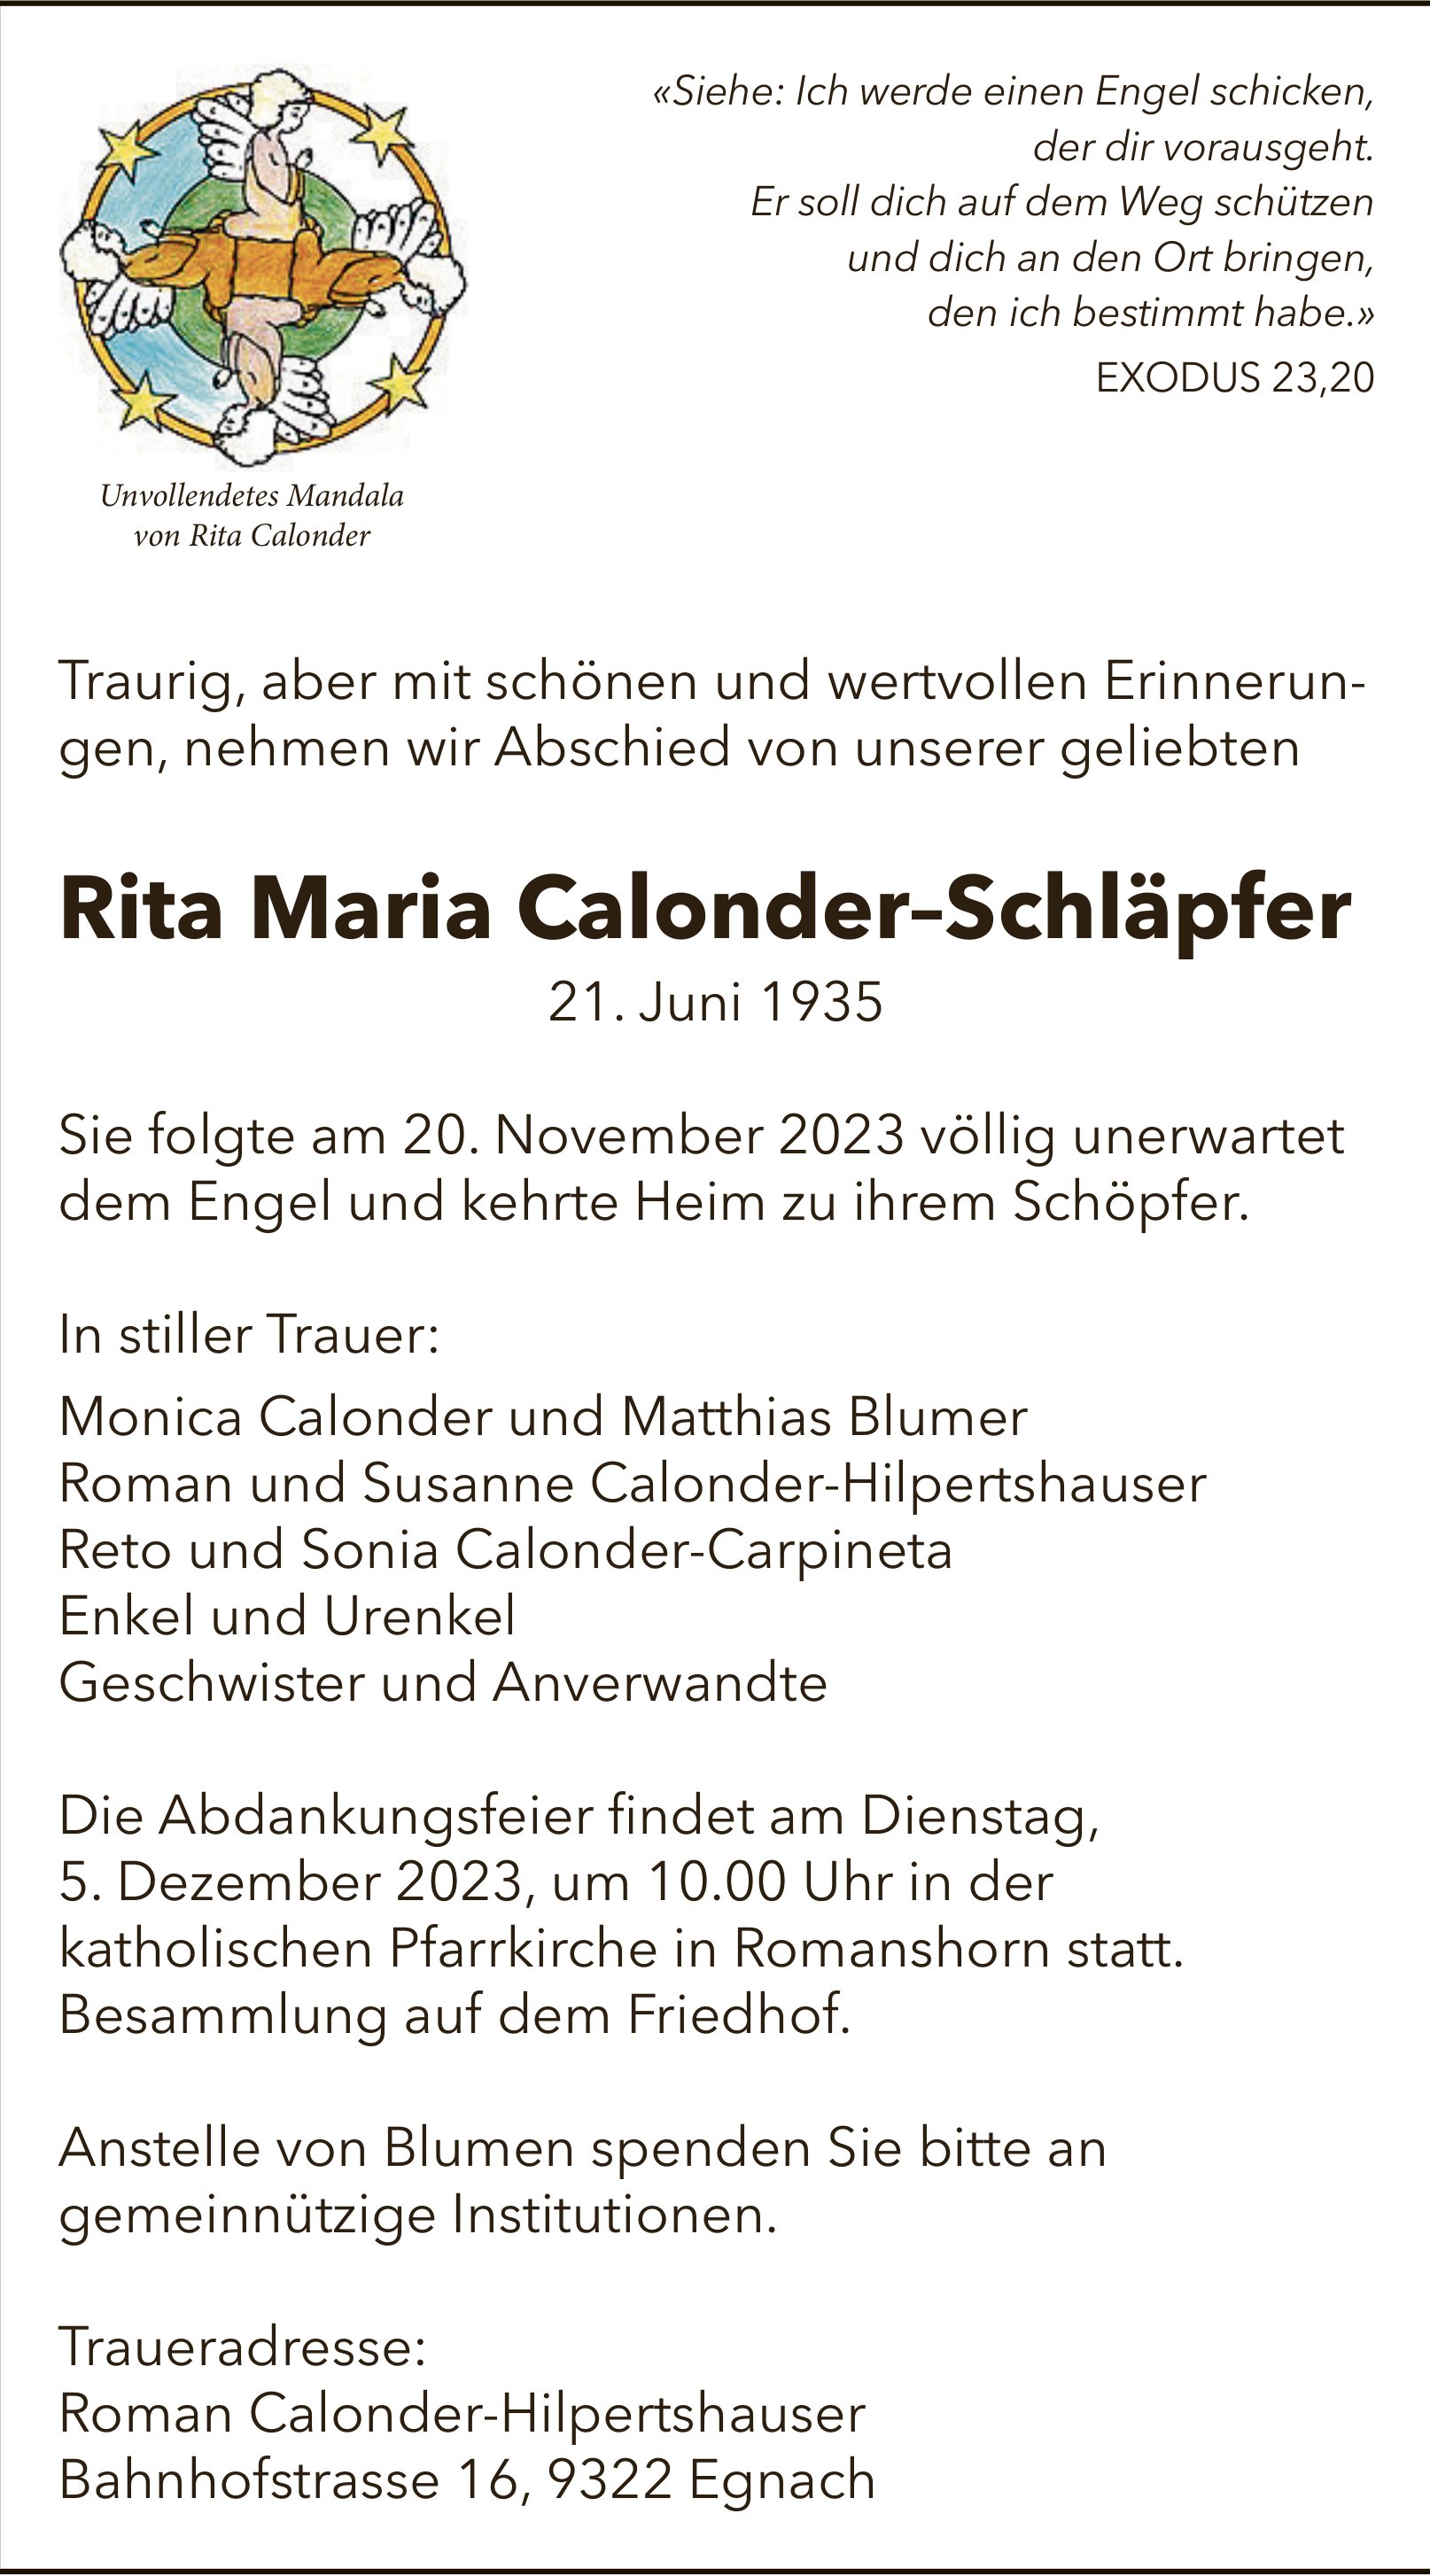 Calonder–Schläpfer Rita Maria, November 2023 / TA